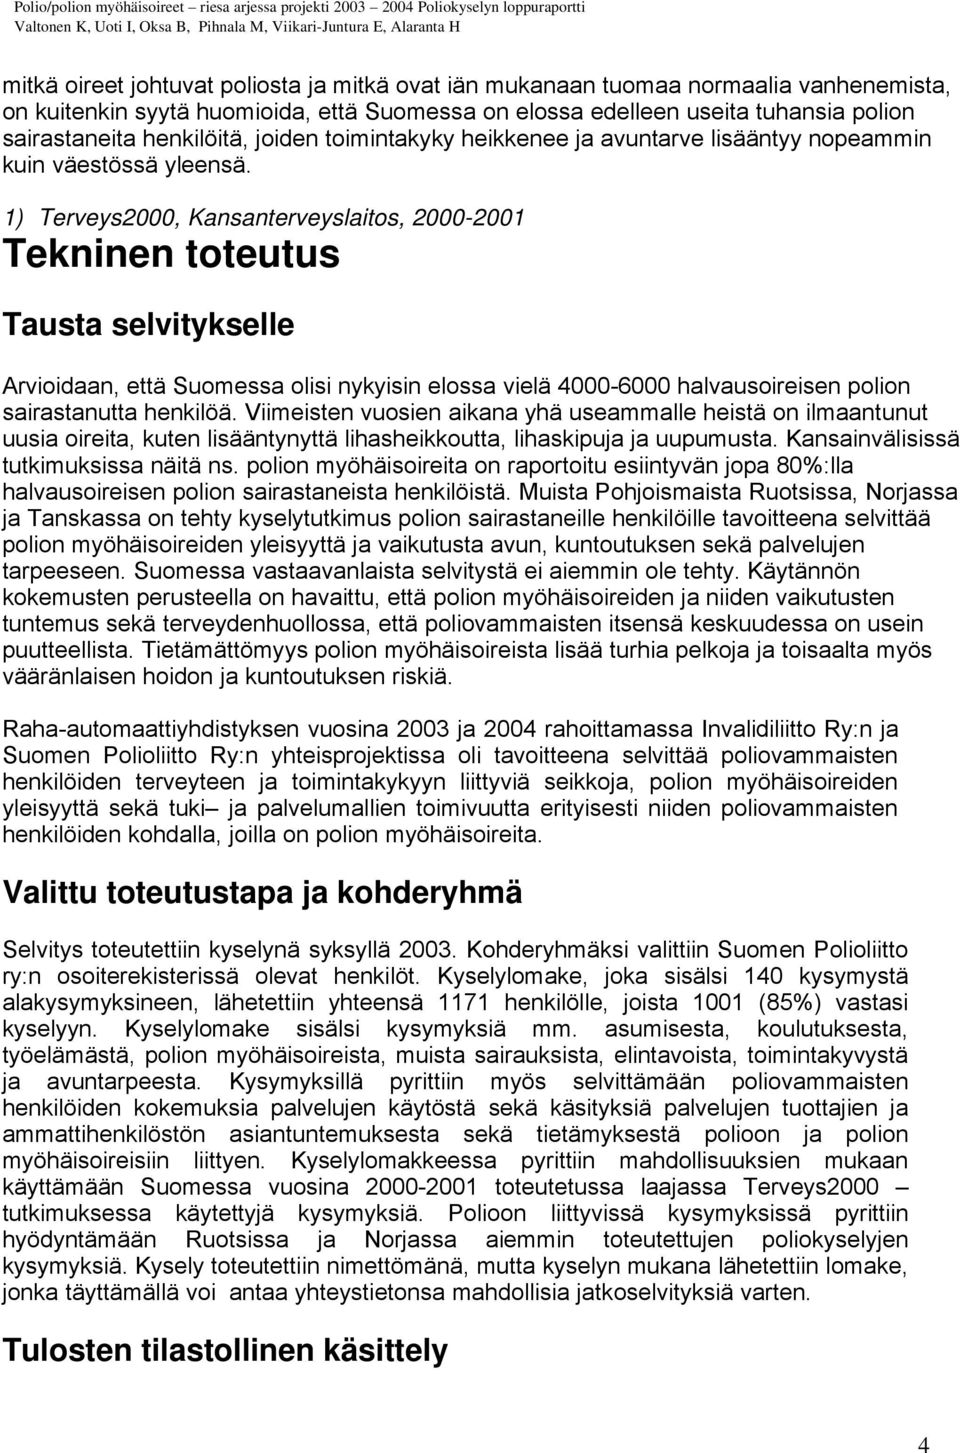 1) Terveys2000, Kansanterveyslaitos, 2000-2001 Tekninen toteutus Tausta selvitykselle Arvioidaan, että Suomessa olisi nykyisin elossa vielä 4000-6000 halvausoireisen polion sairastanutta henkilöä.